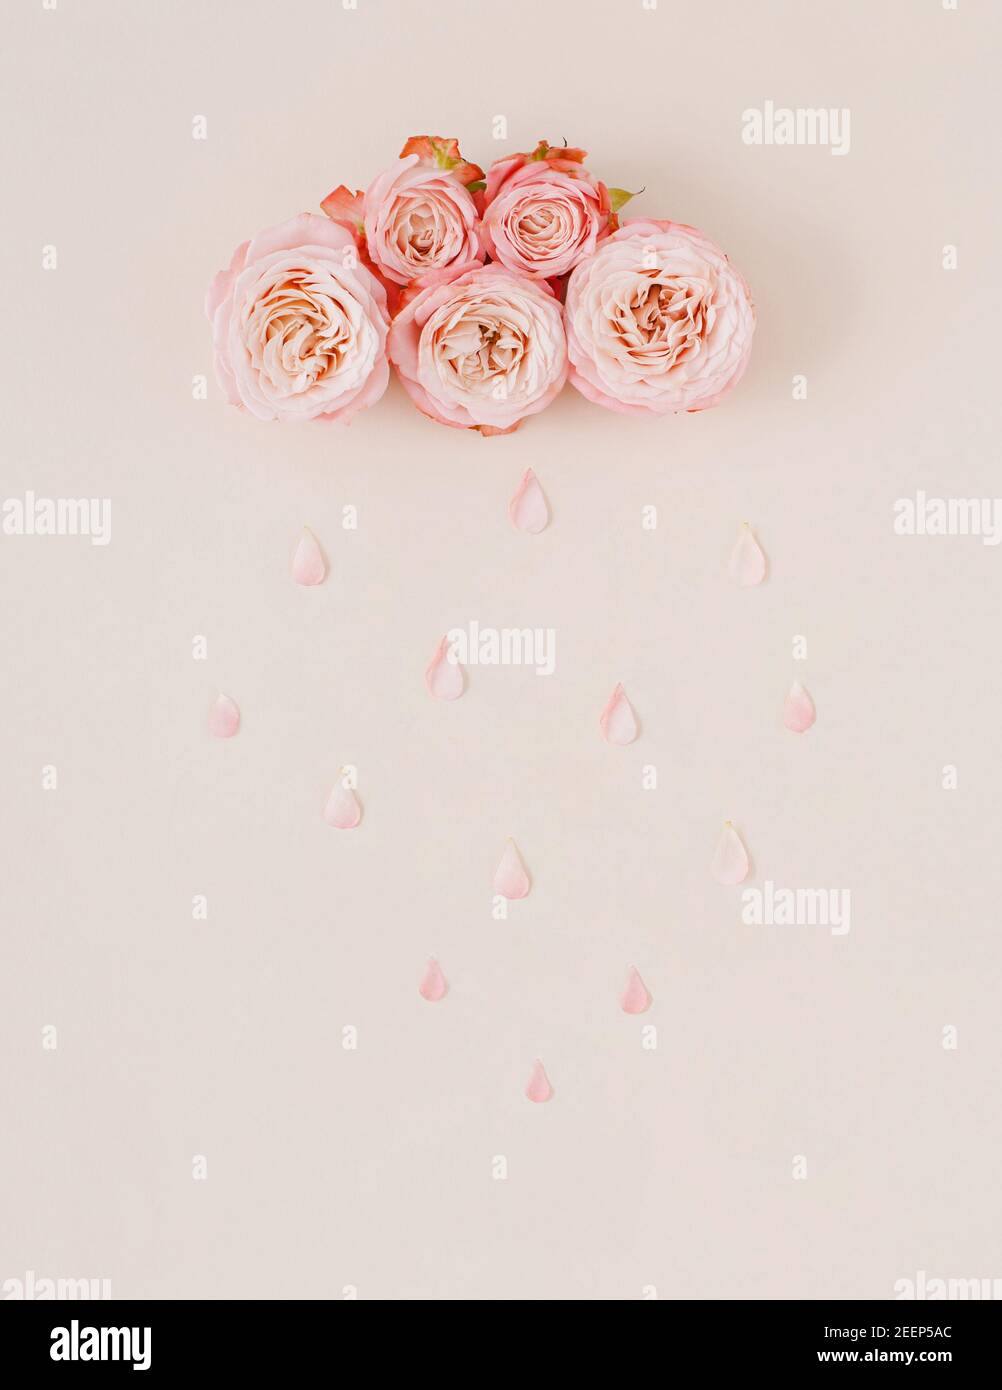 Nuvola pastello bianca e rosa e pioggia fatta con fiori di rosa e petali. Natura o concetto di giorno della donna. Sfondo creativo. Estetica minima. Foto Stock